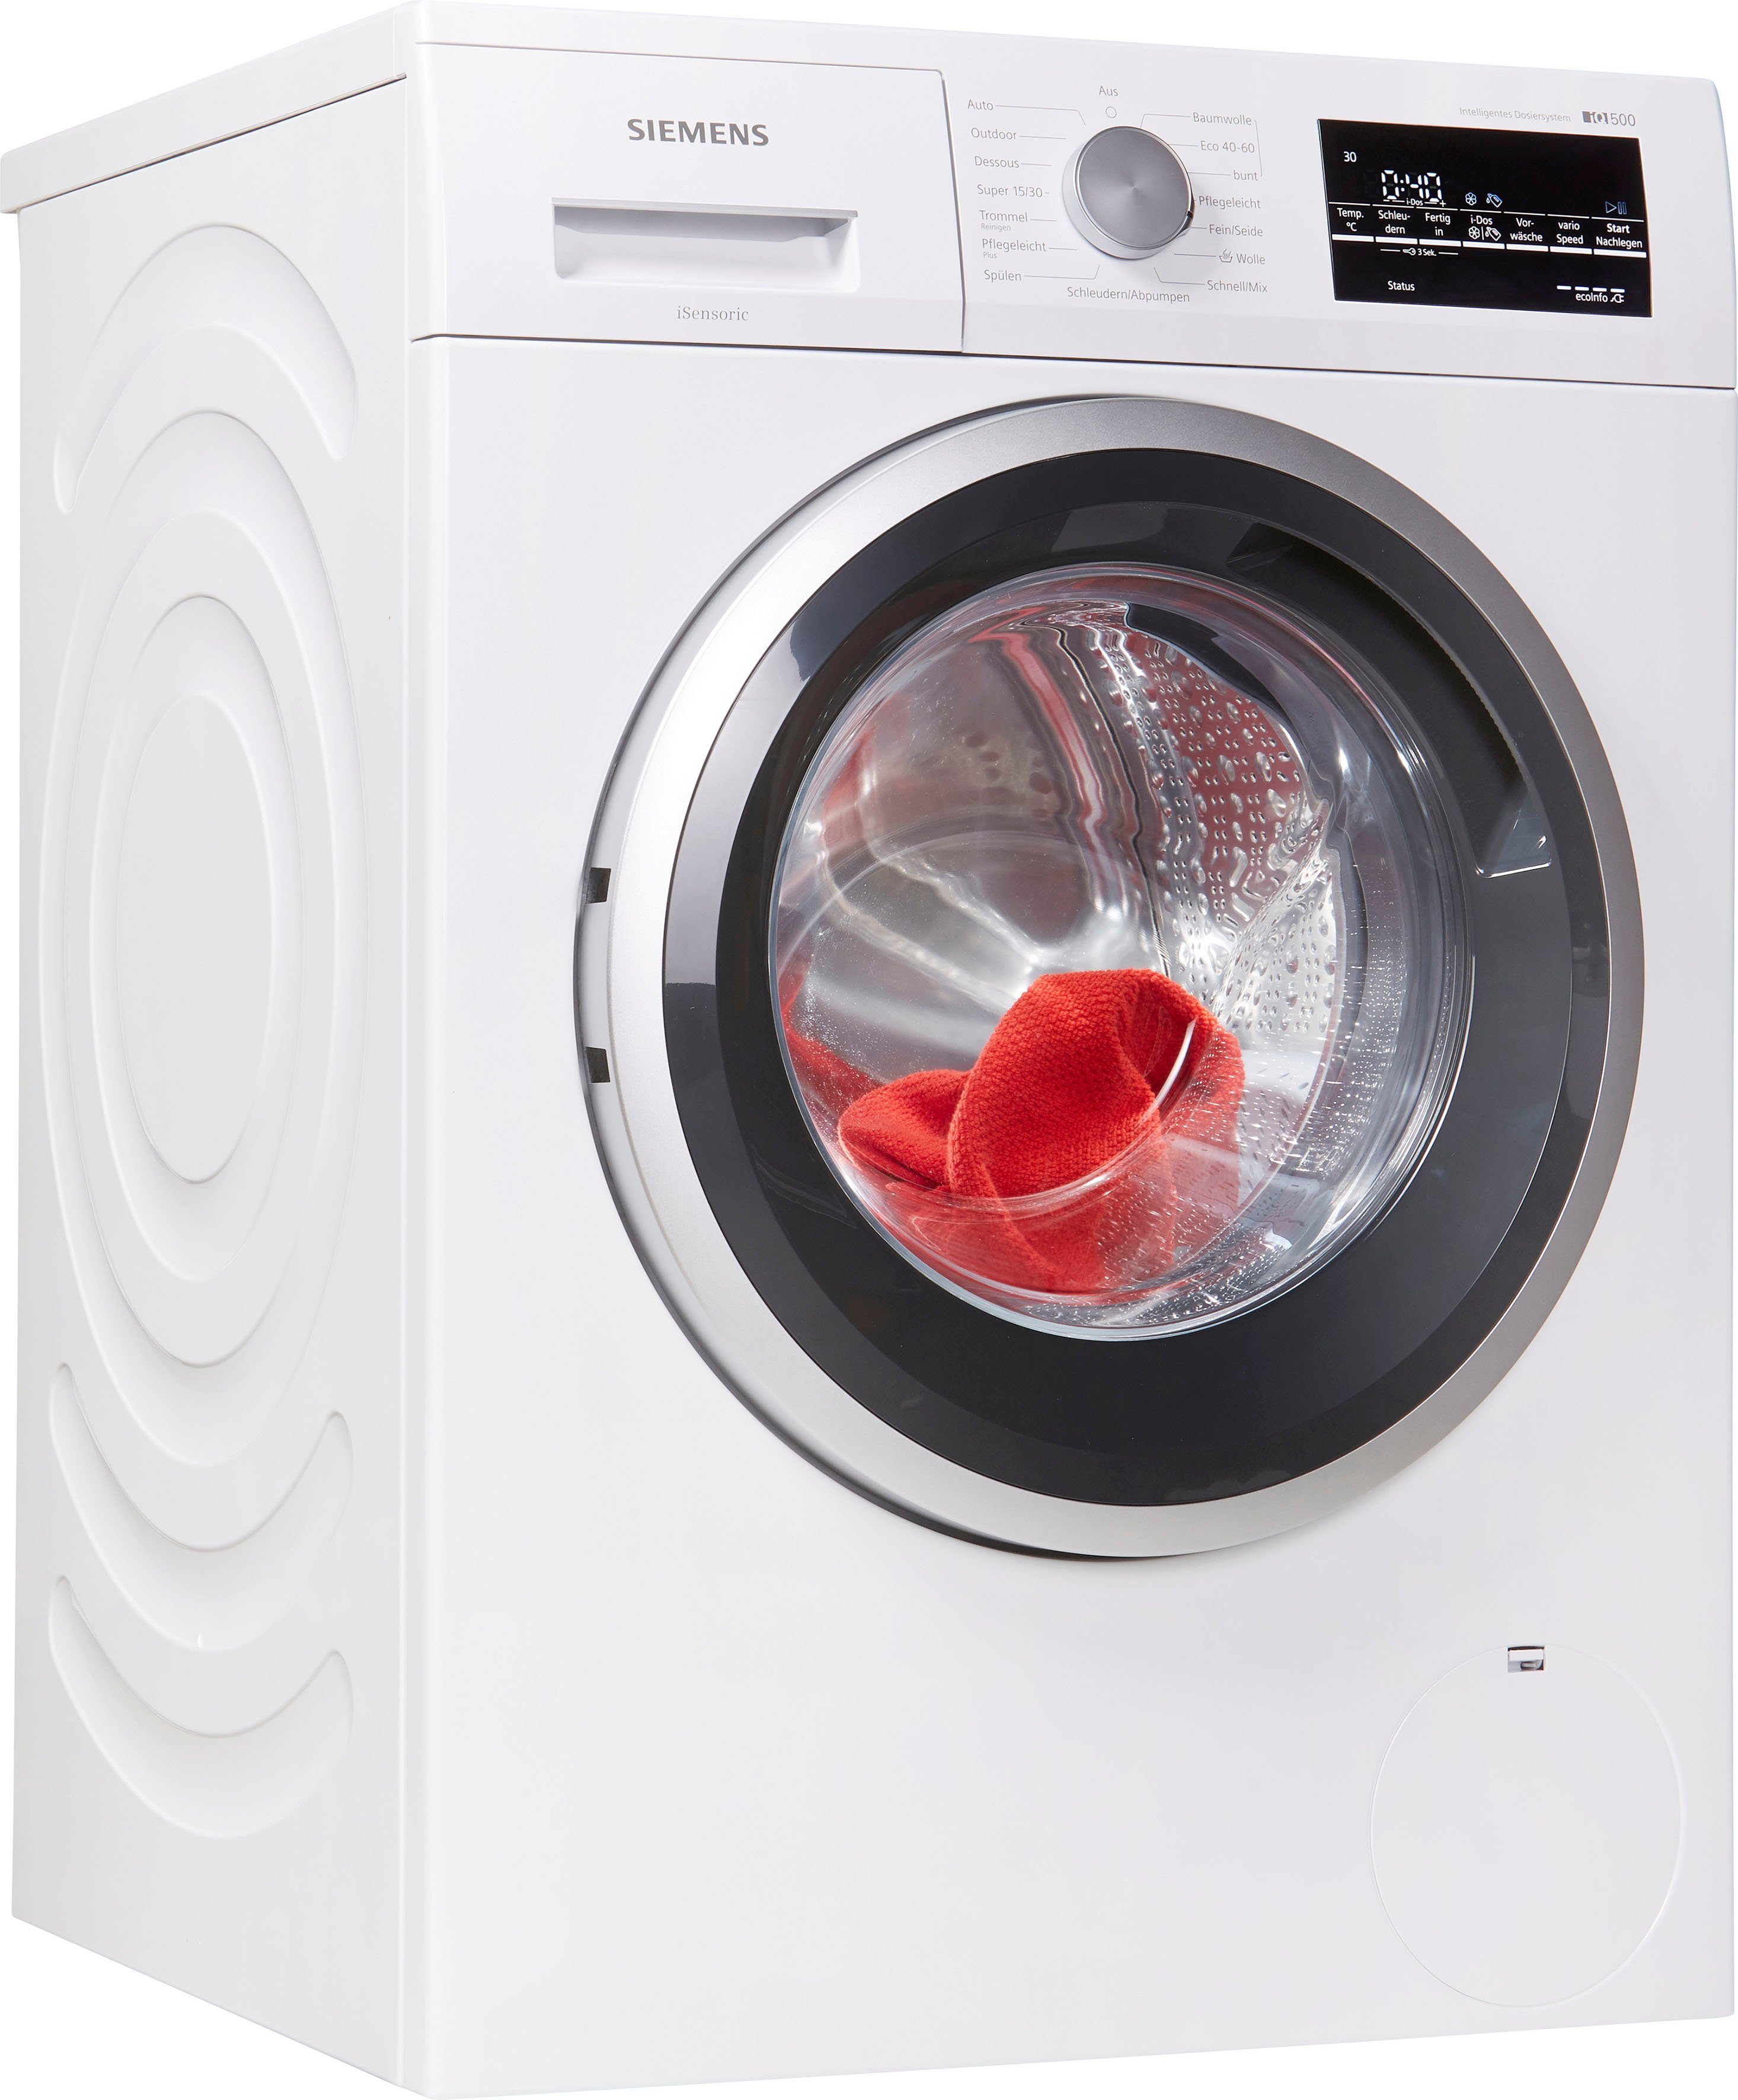 SIEMENS Waschmaschine iQ500 WM14US70, 9 kg, 1400 U/min online kaufen | OTTO